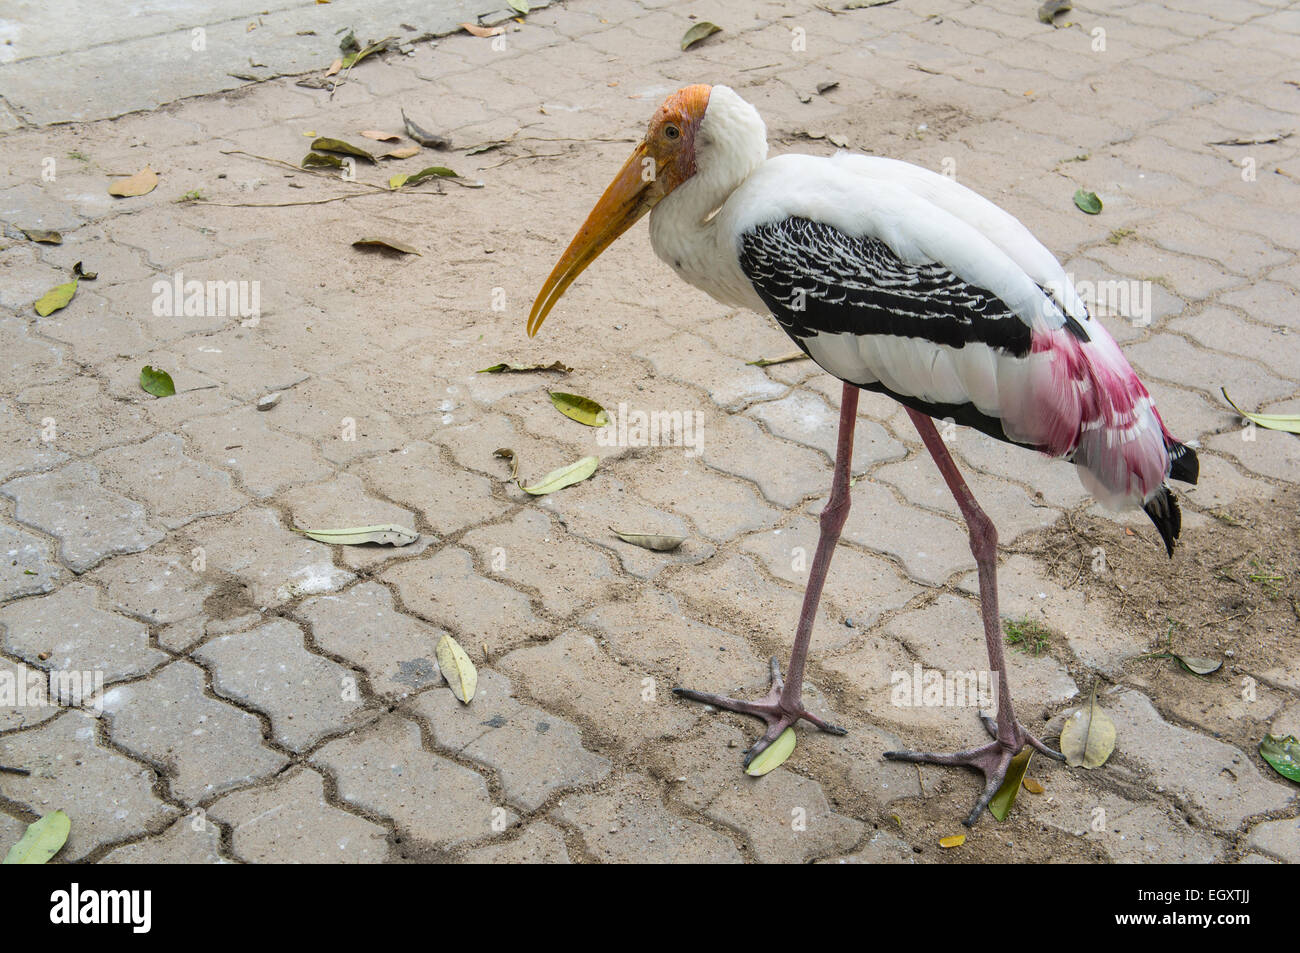 Grand oiseau marcher de longues jambes faim nourriture Banque D'Images